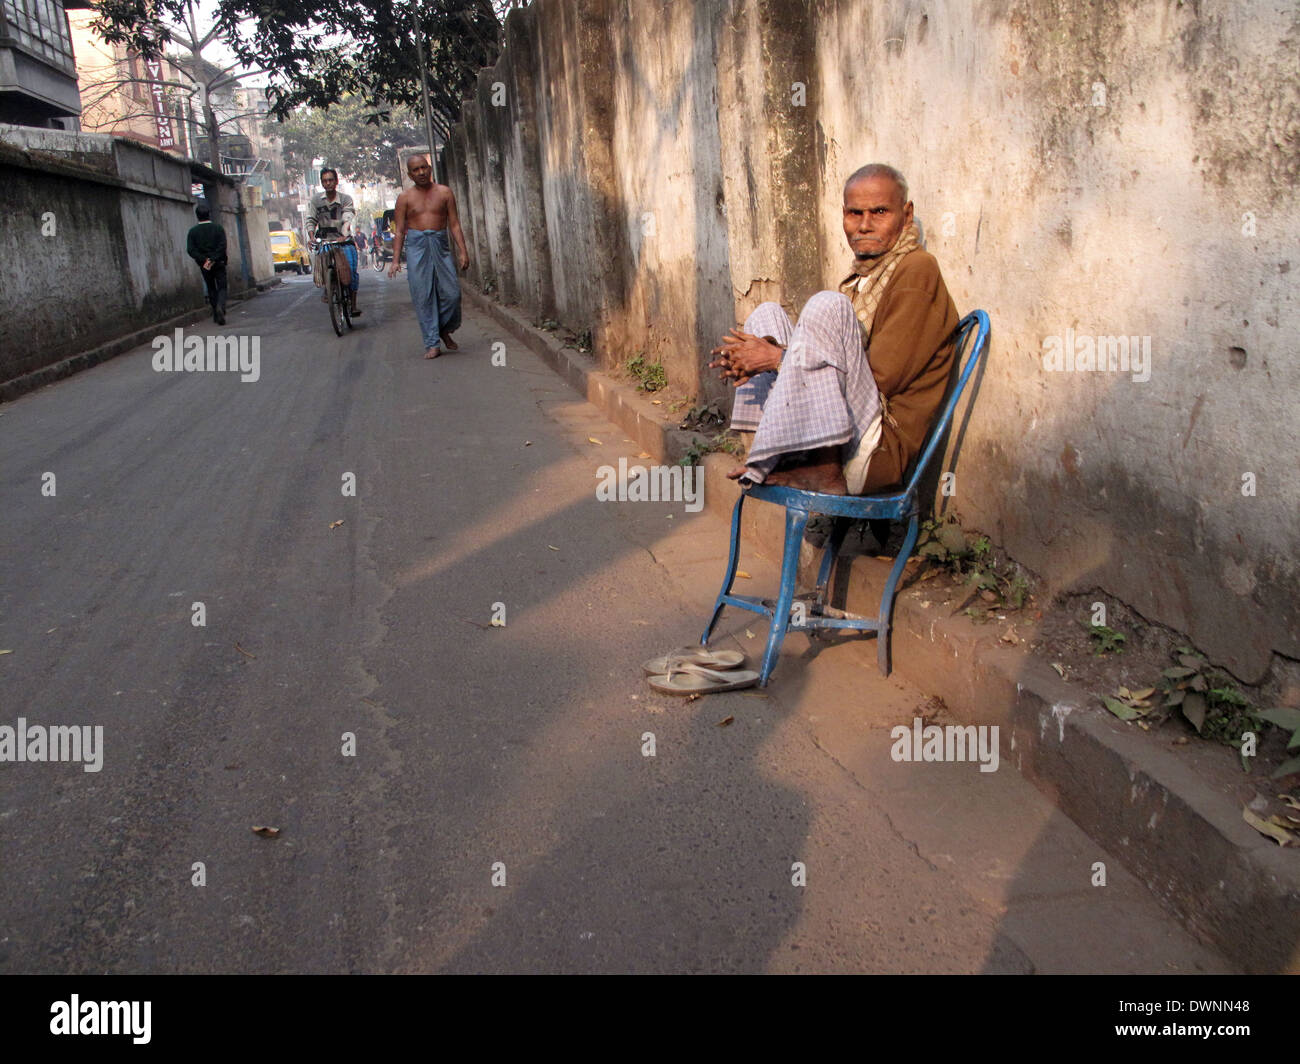 Rues de Calcutta. Homme assis sur une chaise, le 23 janvier 2009. Banque D'Images